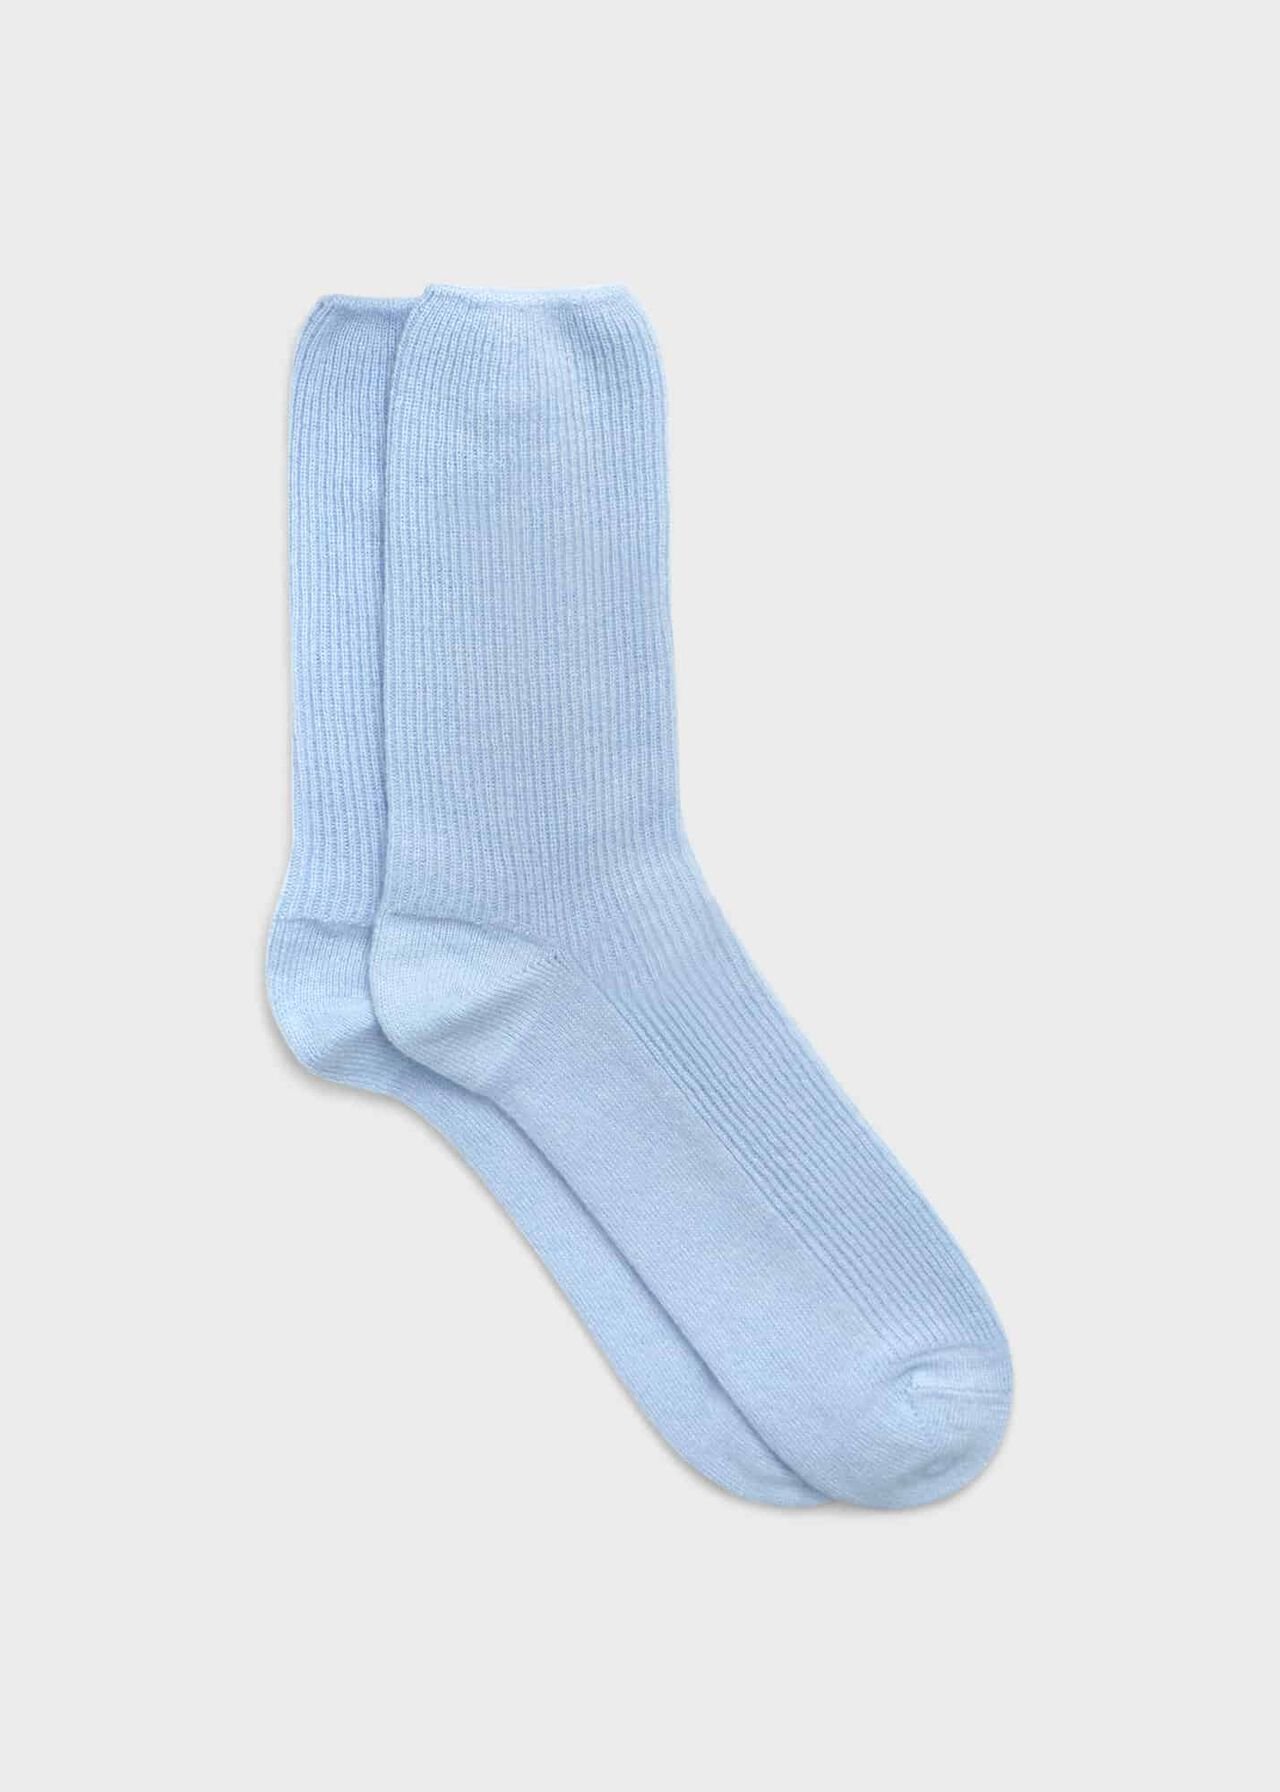 Mabel Cashmere Socks, Pale Blue, hi-res